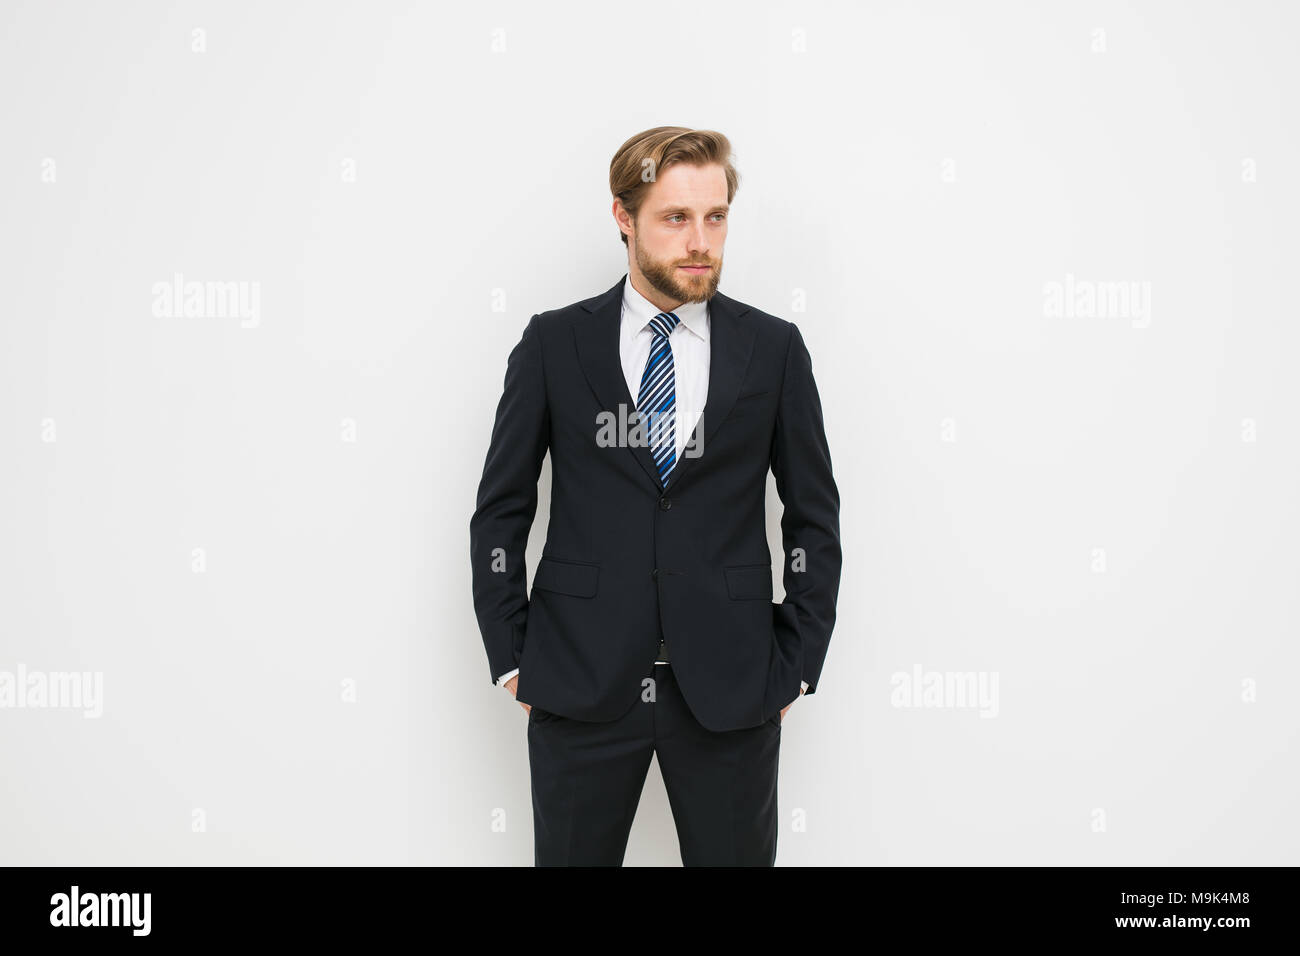 Eleganten Mann Geschaftsmann Stehen Auf Weissen Wand In Anzug Blonder Mann Mit Bart Gut Aussehend Und Cofident Stockfotografie Alamy